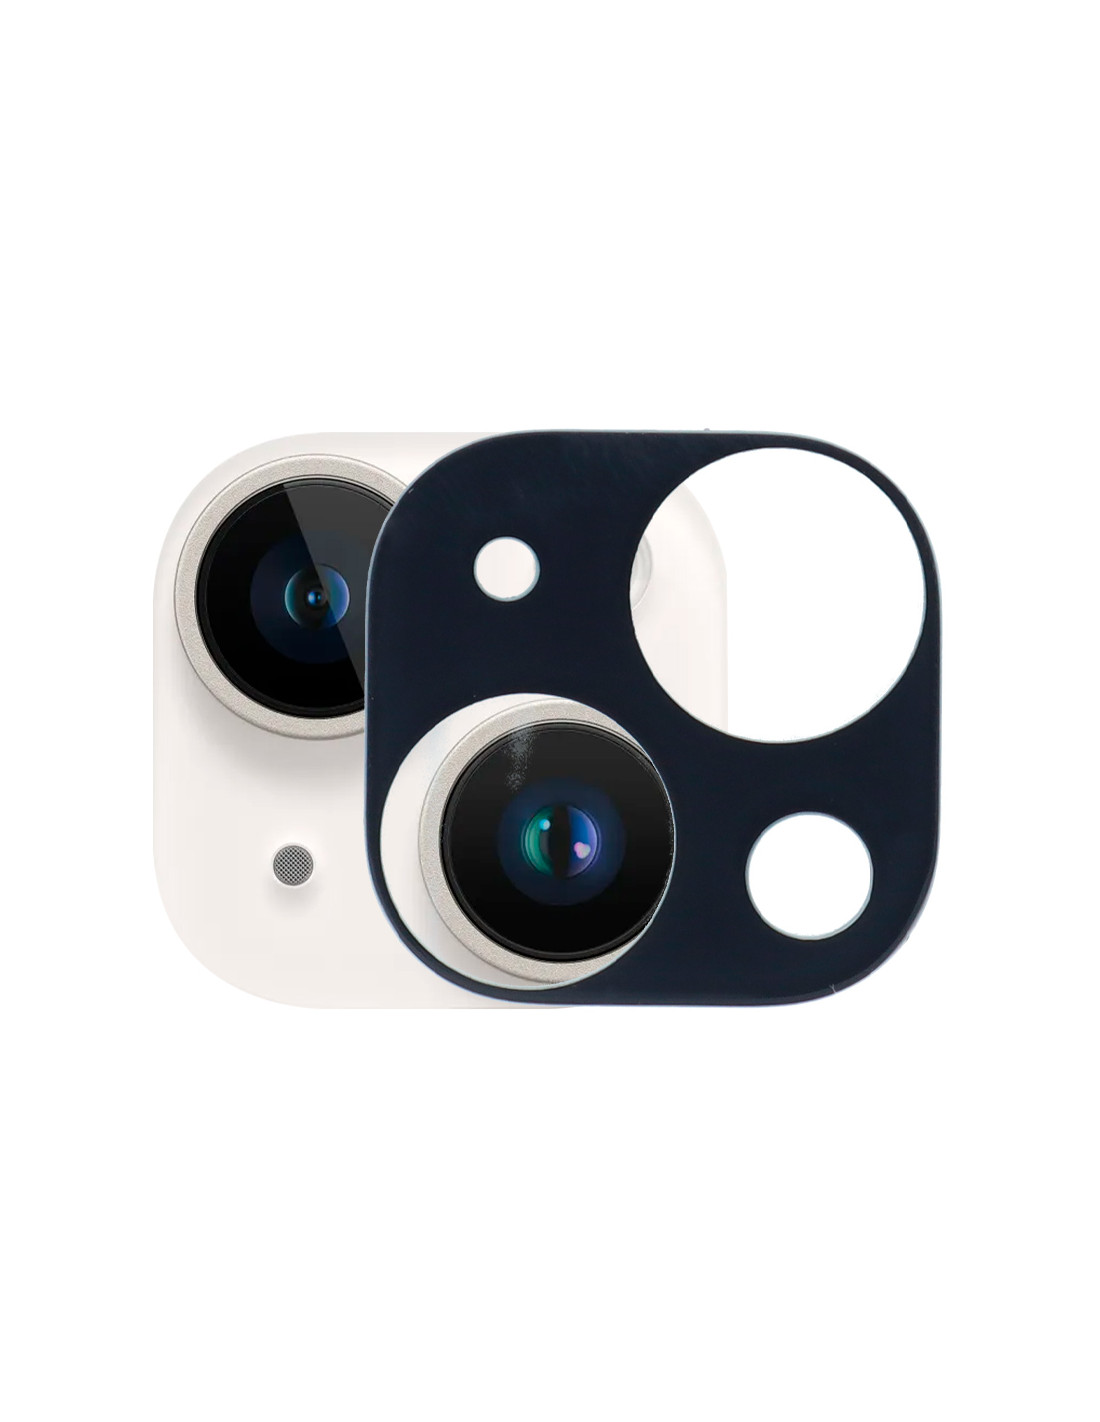  Protector de lente de cámara compatible con iPhone 14 y 14 Plus  (6.1 y 6.7 pulgadas), cubierta de cámara Apple brillante con vidrio  transparente, accesorios de protección para lentes de cámara